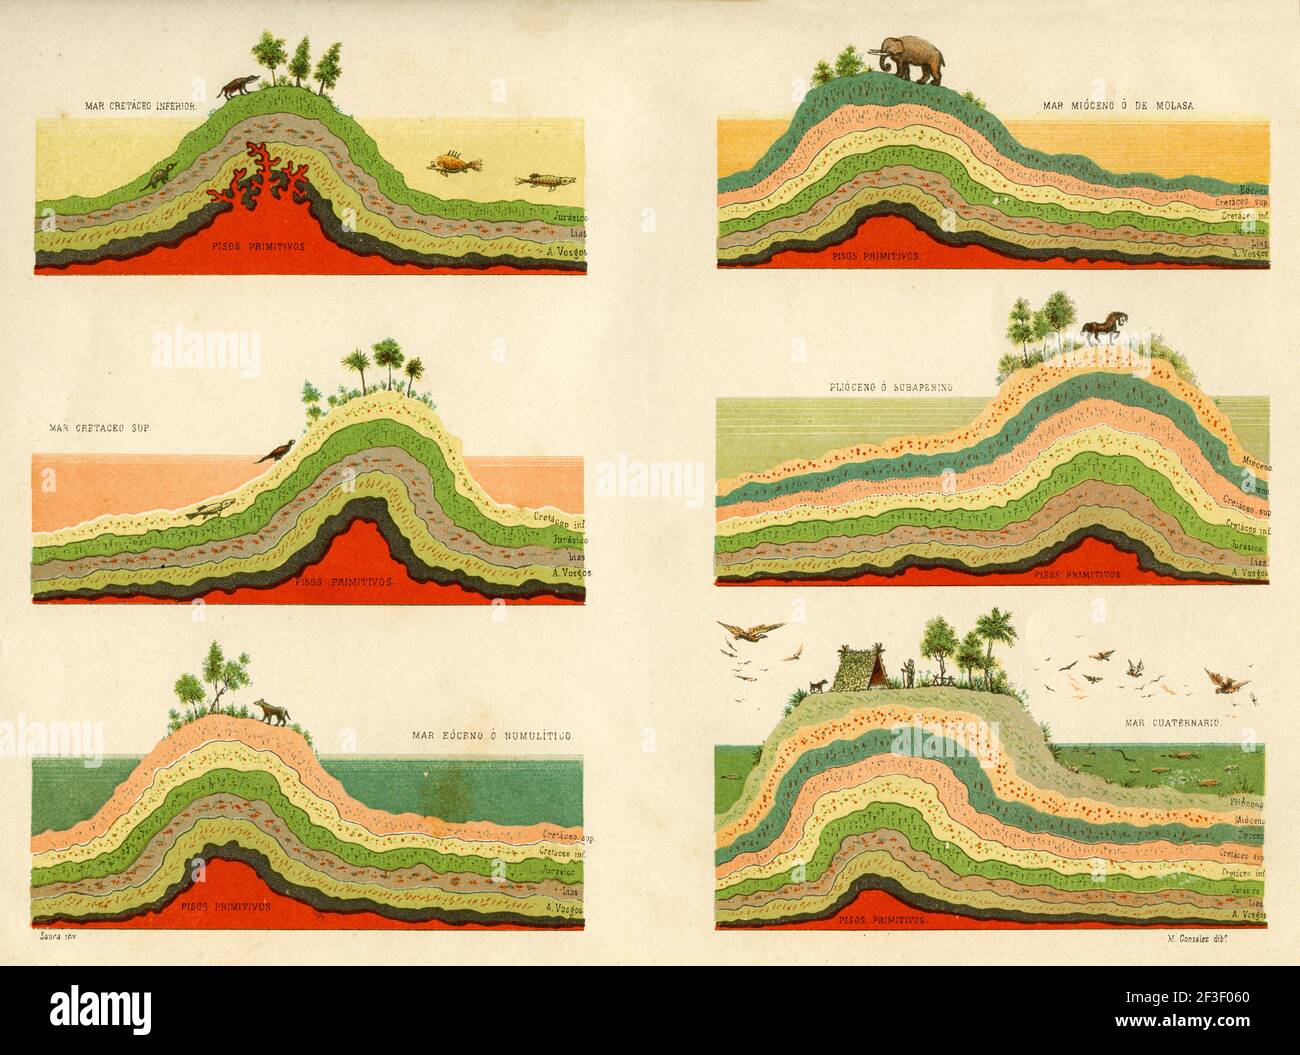 Formazione degli strati terrestri dalle terre cretacee all'epoca quaternaria. Vecchia litografia del 19 ° secolo da El Mundo Ilustrado 1879 Foto Stock